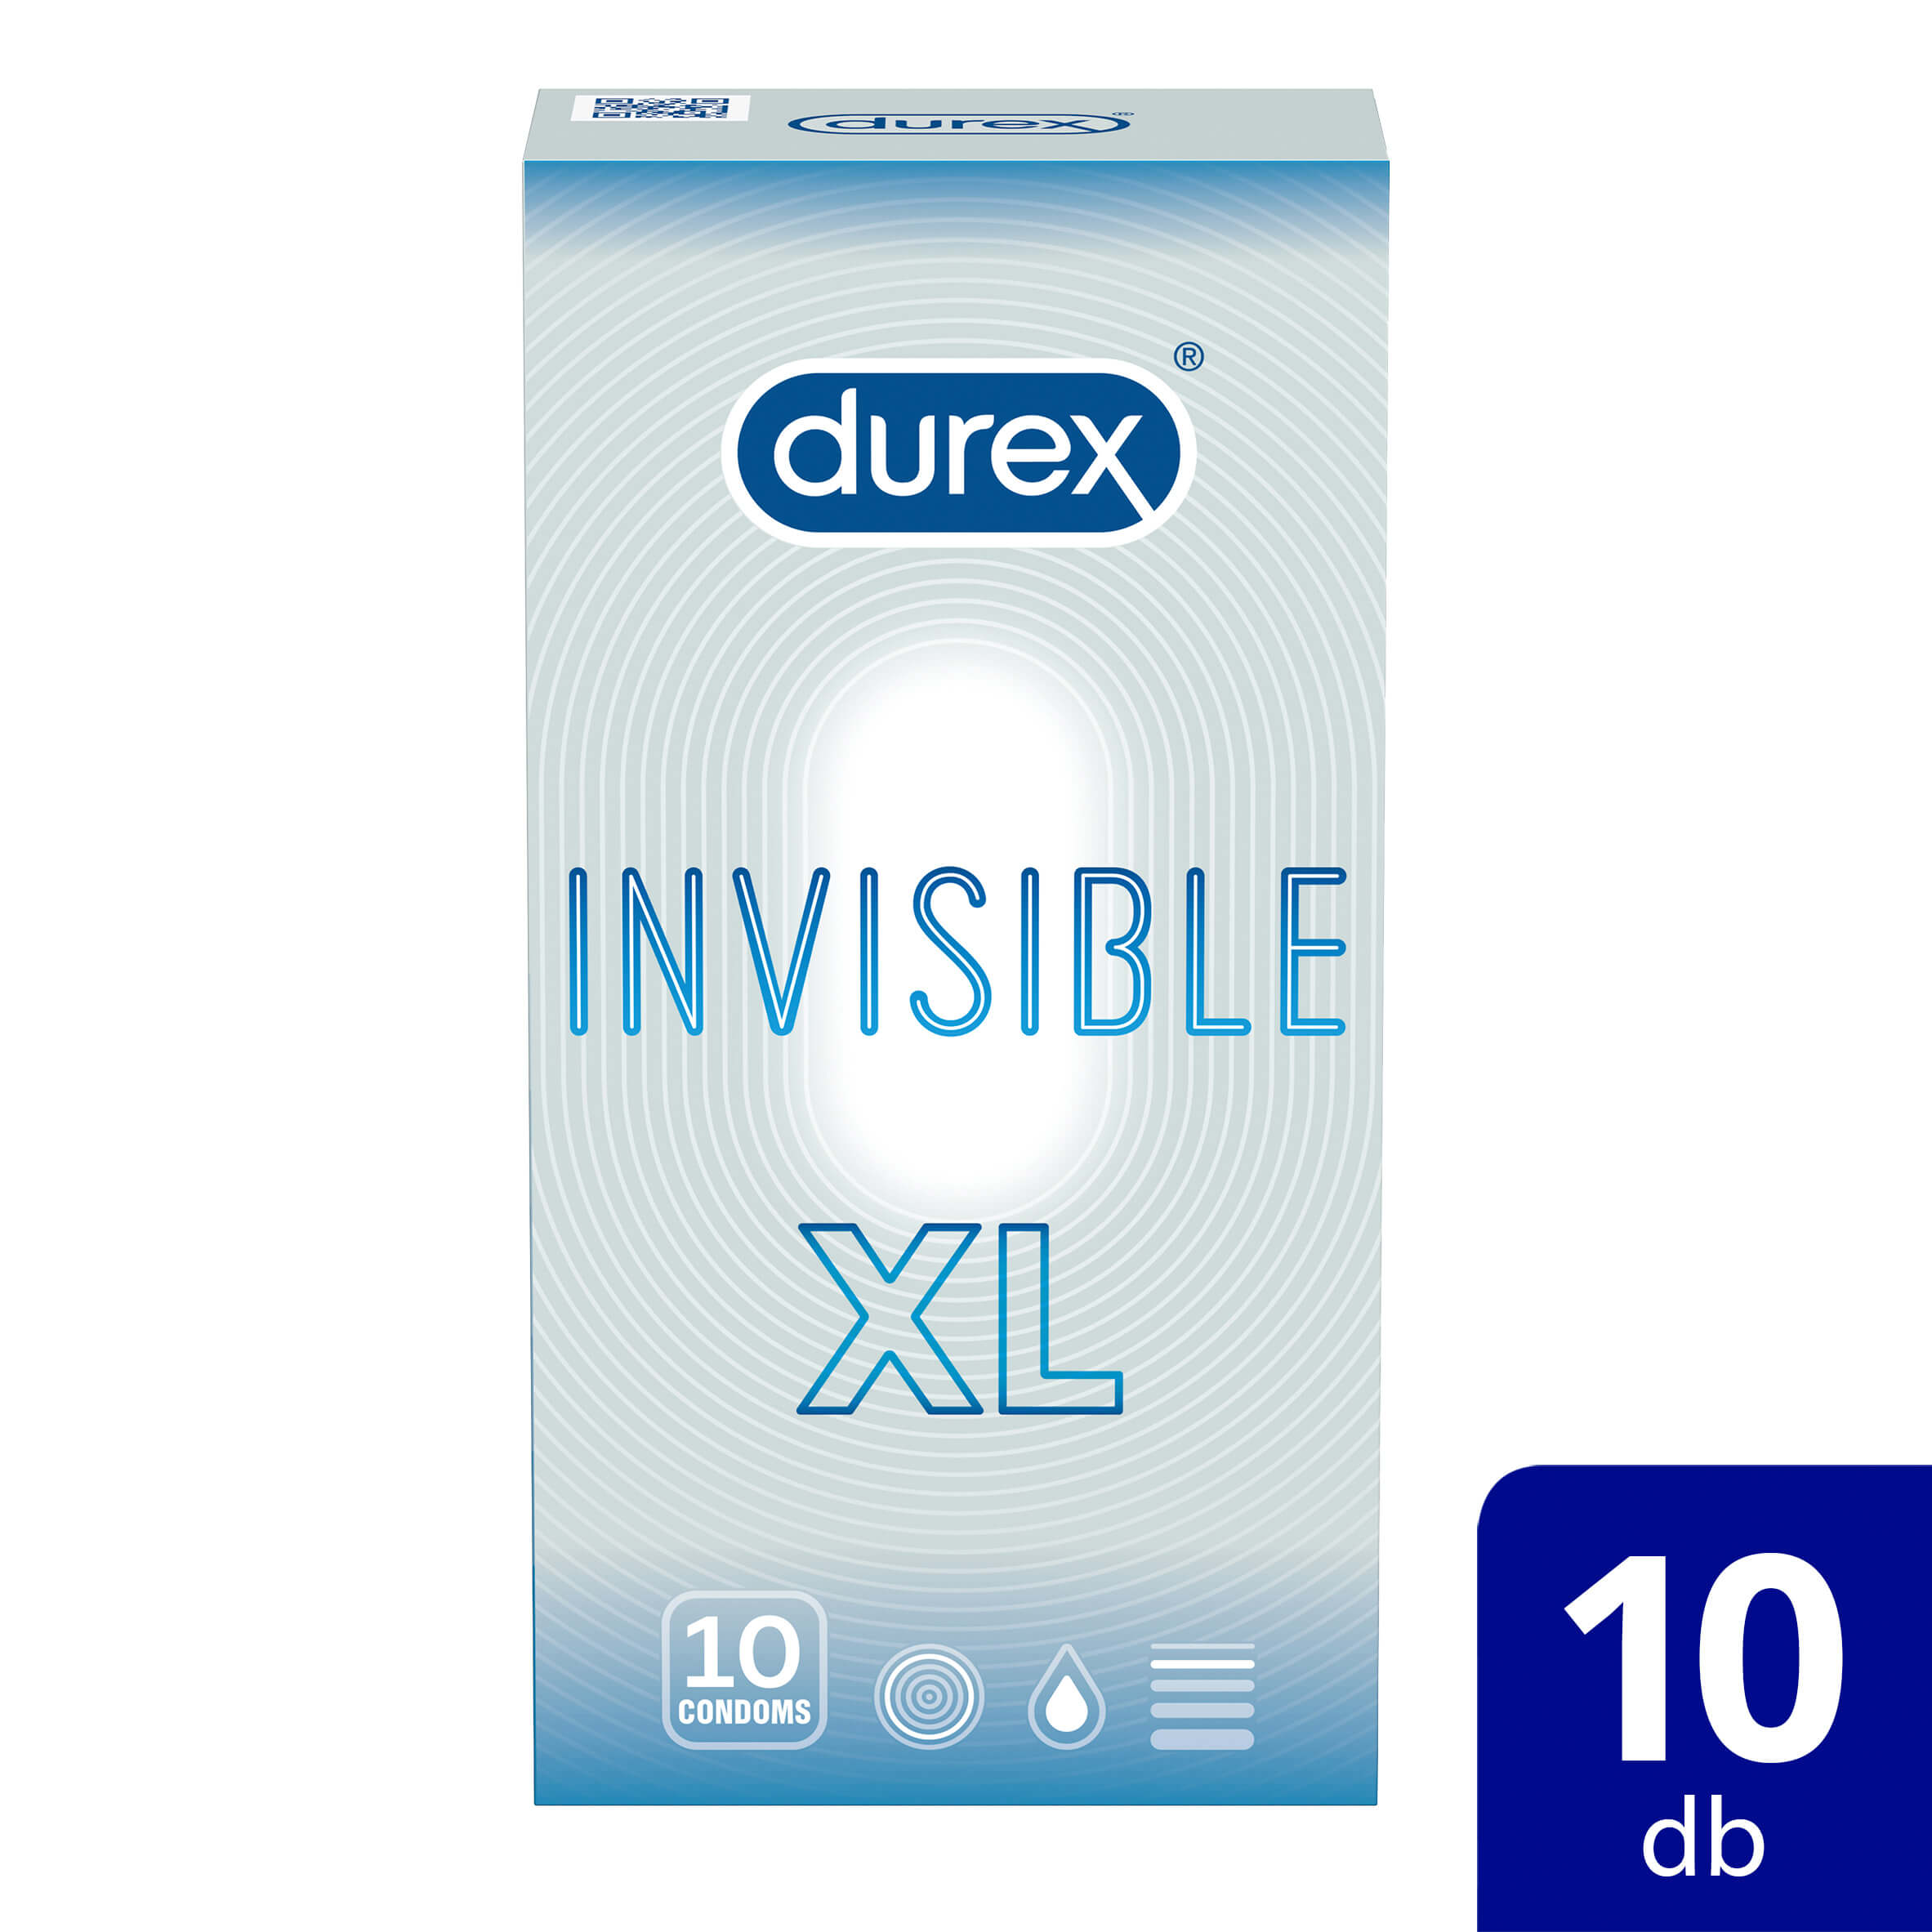 Durex Invisible XL - extra nagy óvszer (10 db) kép